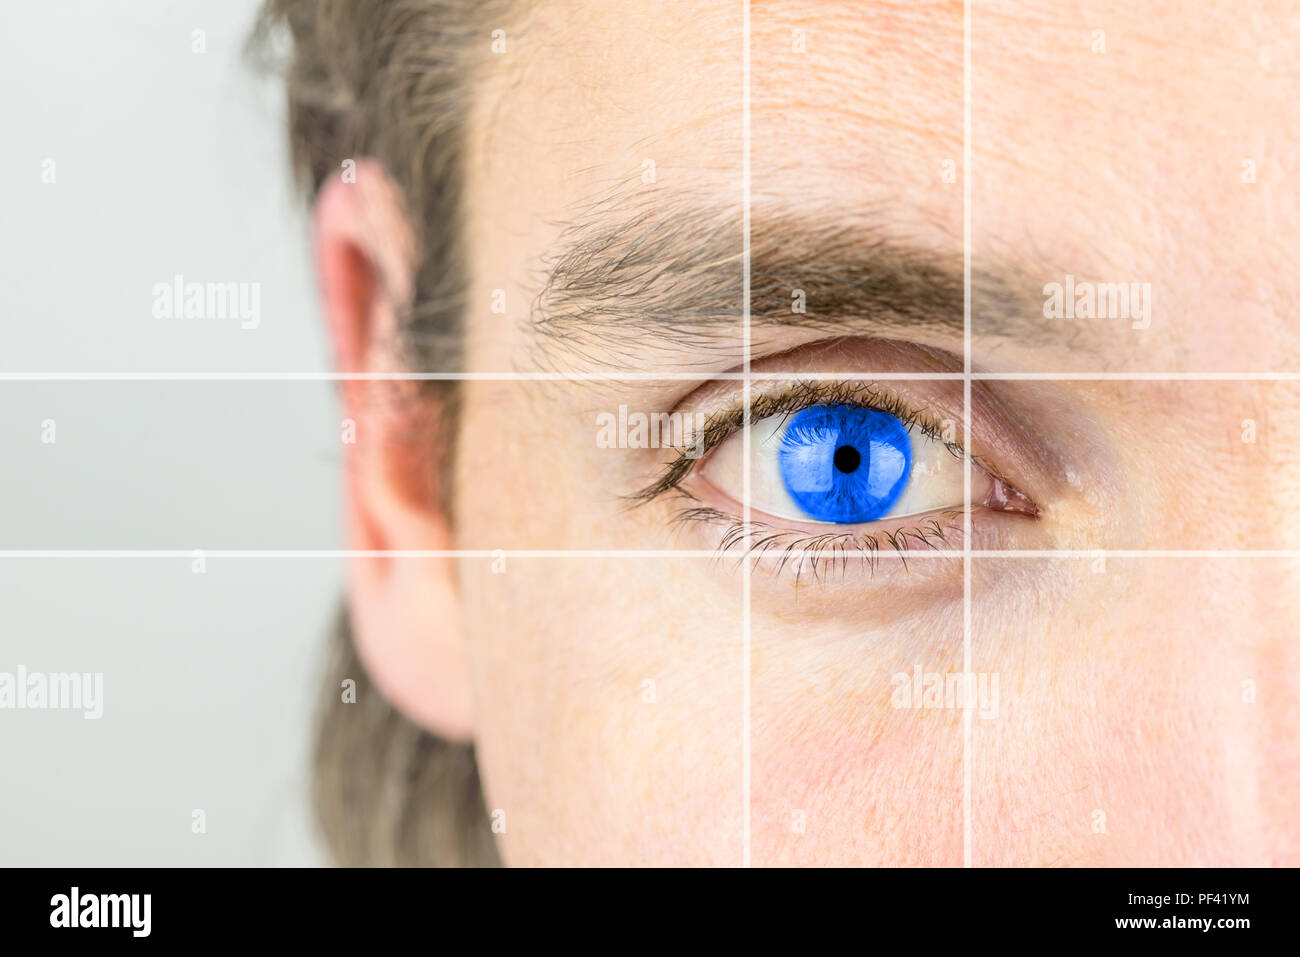 Junger Mann mit einem strahlend blauen Auge mit parallelen Linien zeichnen Ihre Aufmerksamkeit in einem konzeptionellen Bild der psychischen Wahrnehmung, fantasievoll, Intelligenz oder opti Stockfoto